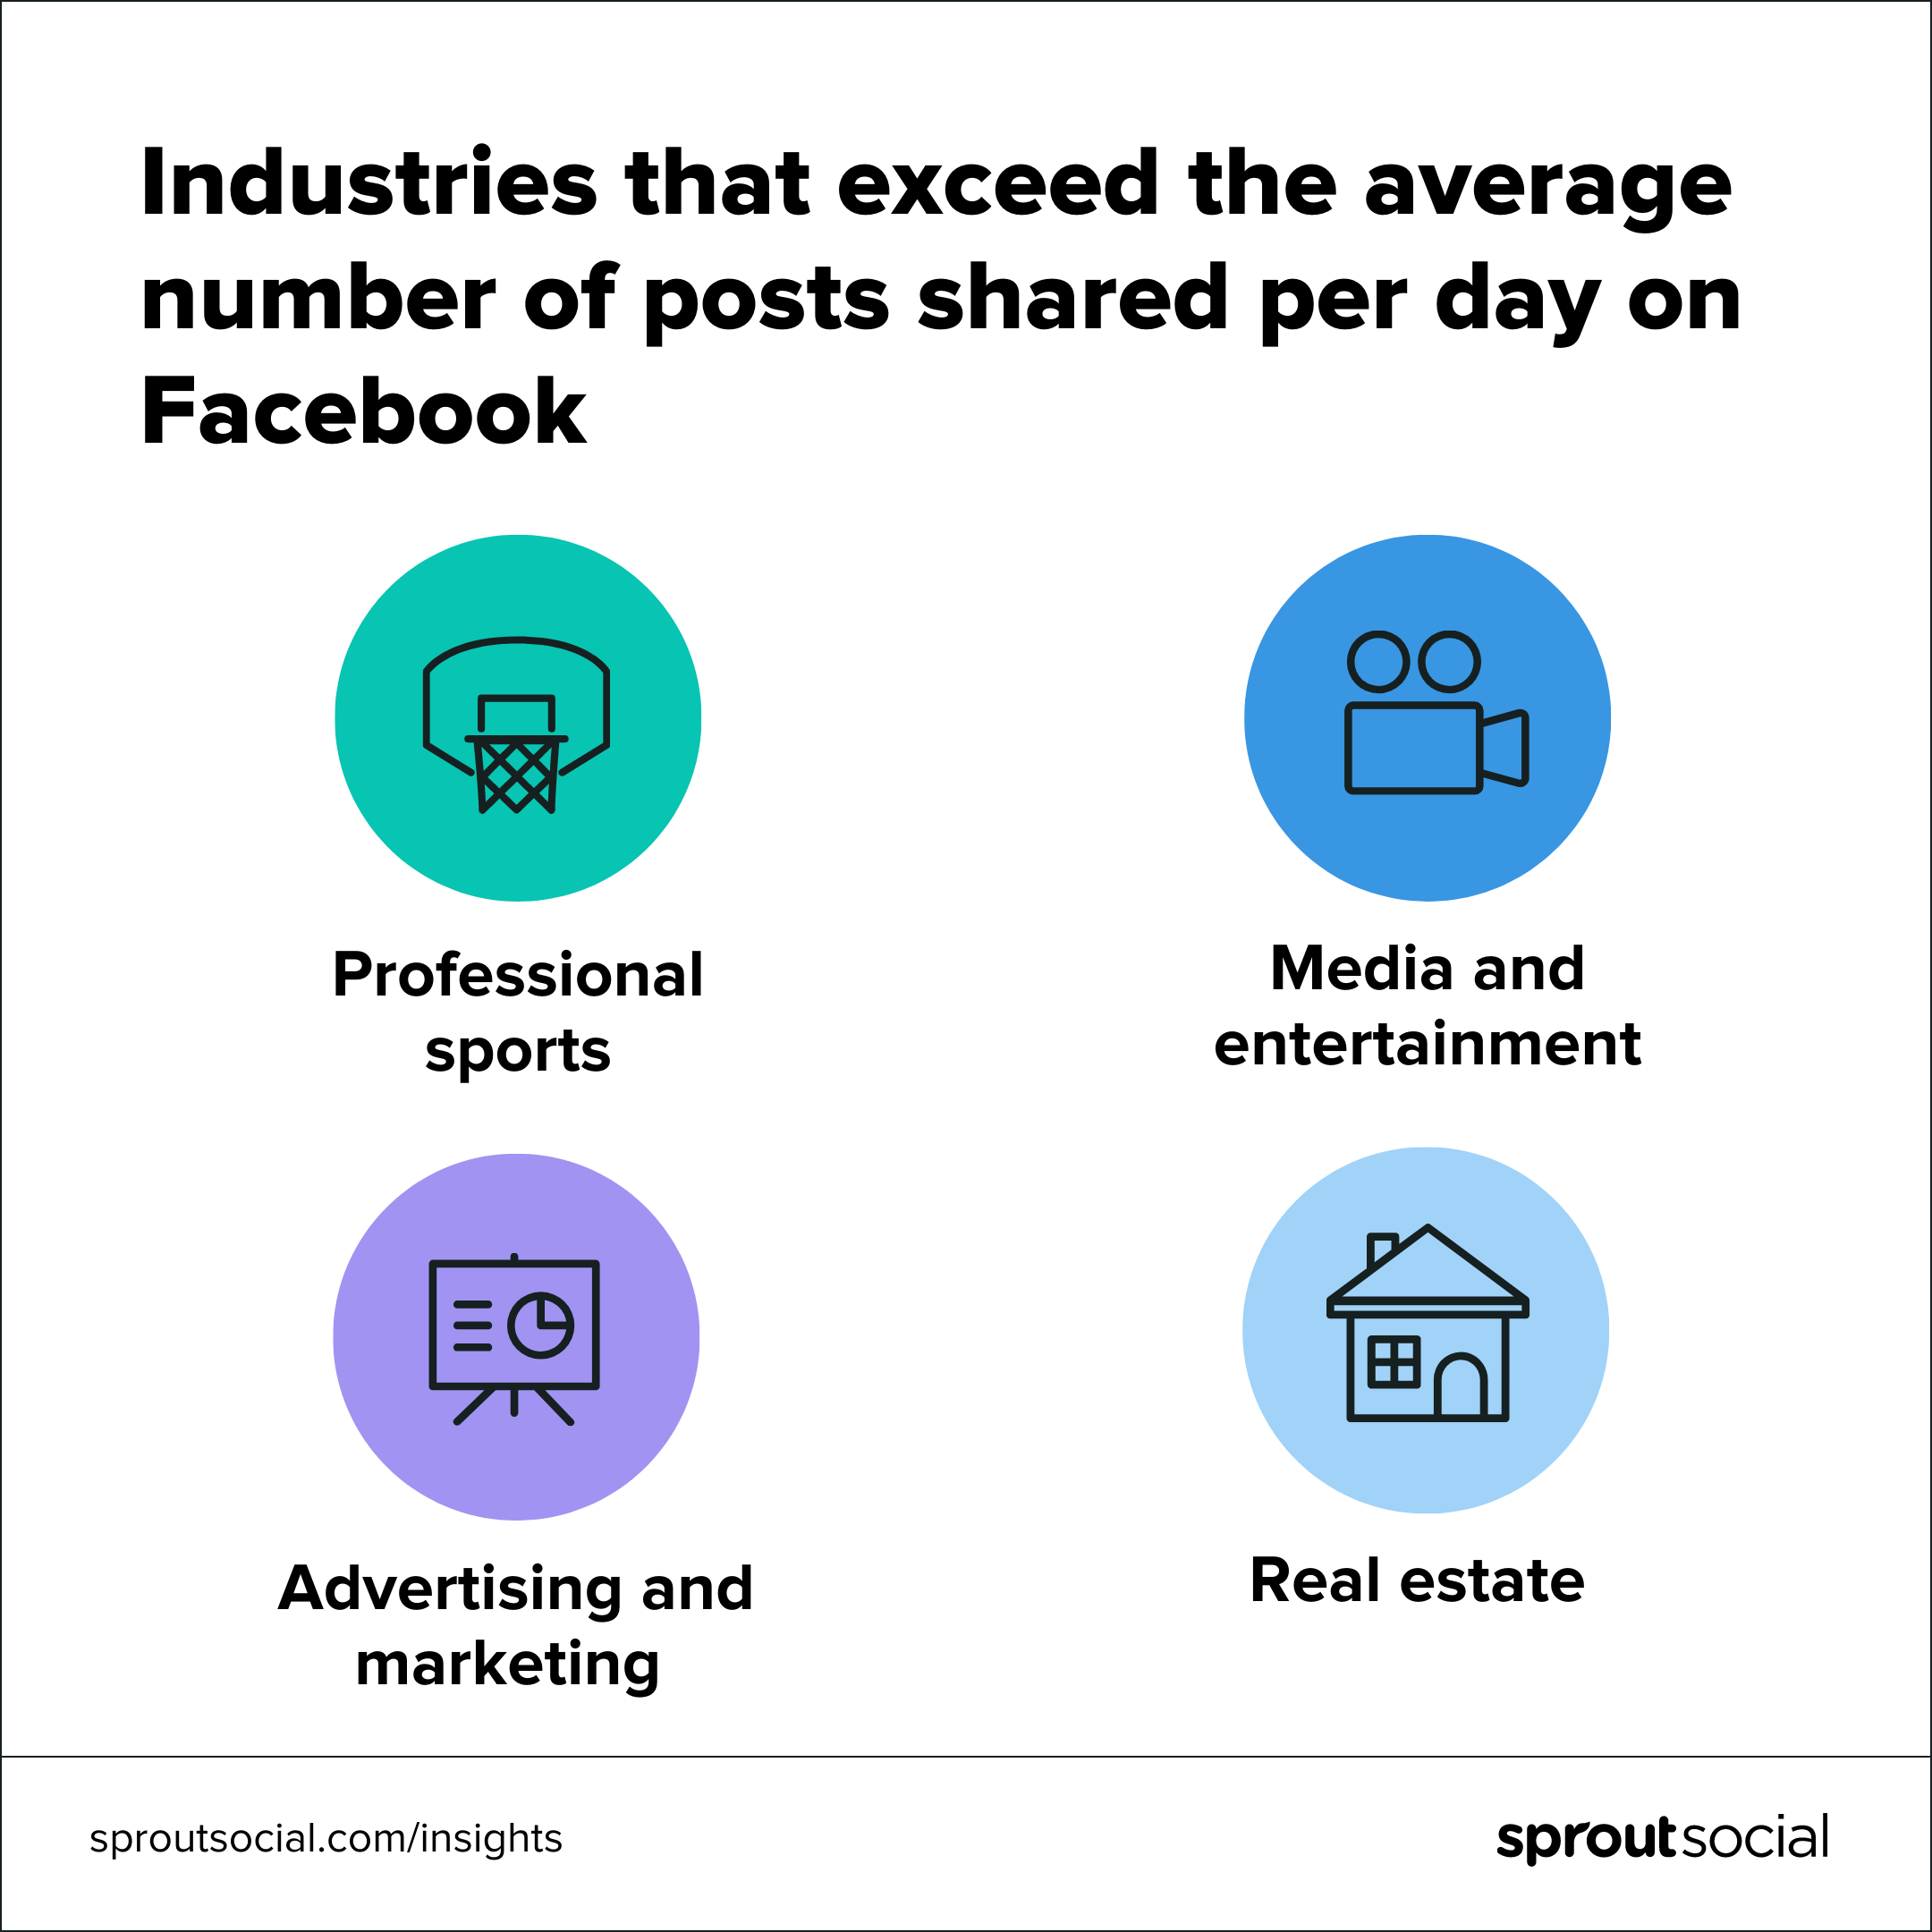 نموداری که چهار صنعت را نشان می دهد که از میانگین تعداد پست های به اشتراک گذاشته شده در فیس بوک در روز بیشتر است.  این صنایع شامل ورزش حرفه ای، رسانه و سرگرمی، تبلیغات و بازاریابی و املاک و مستغلات است.